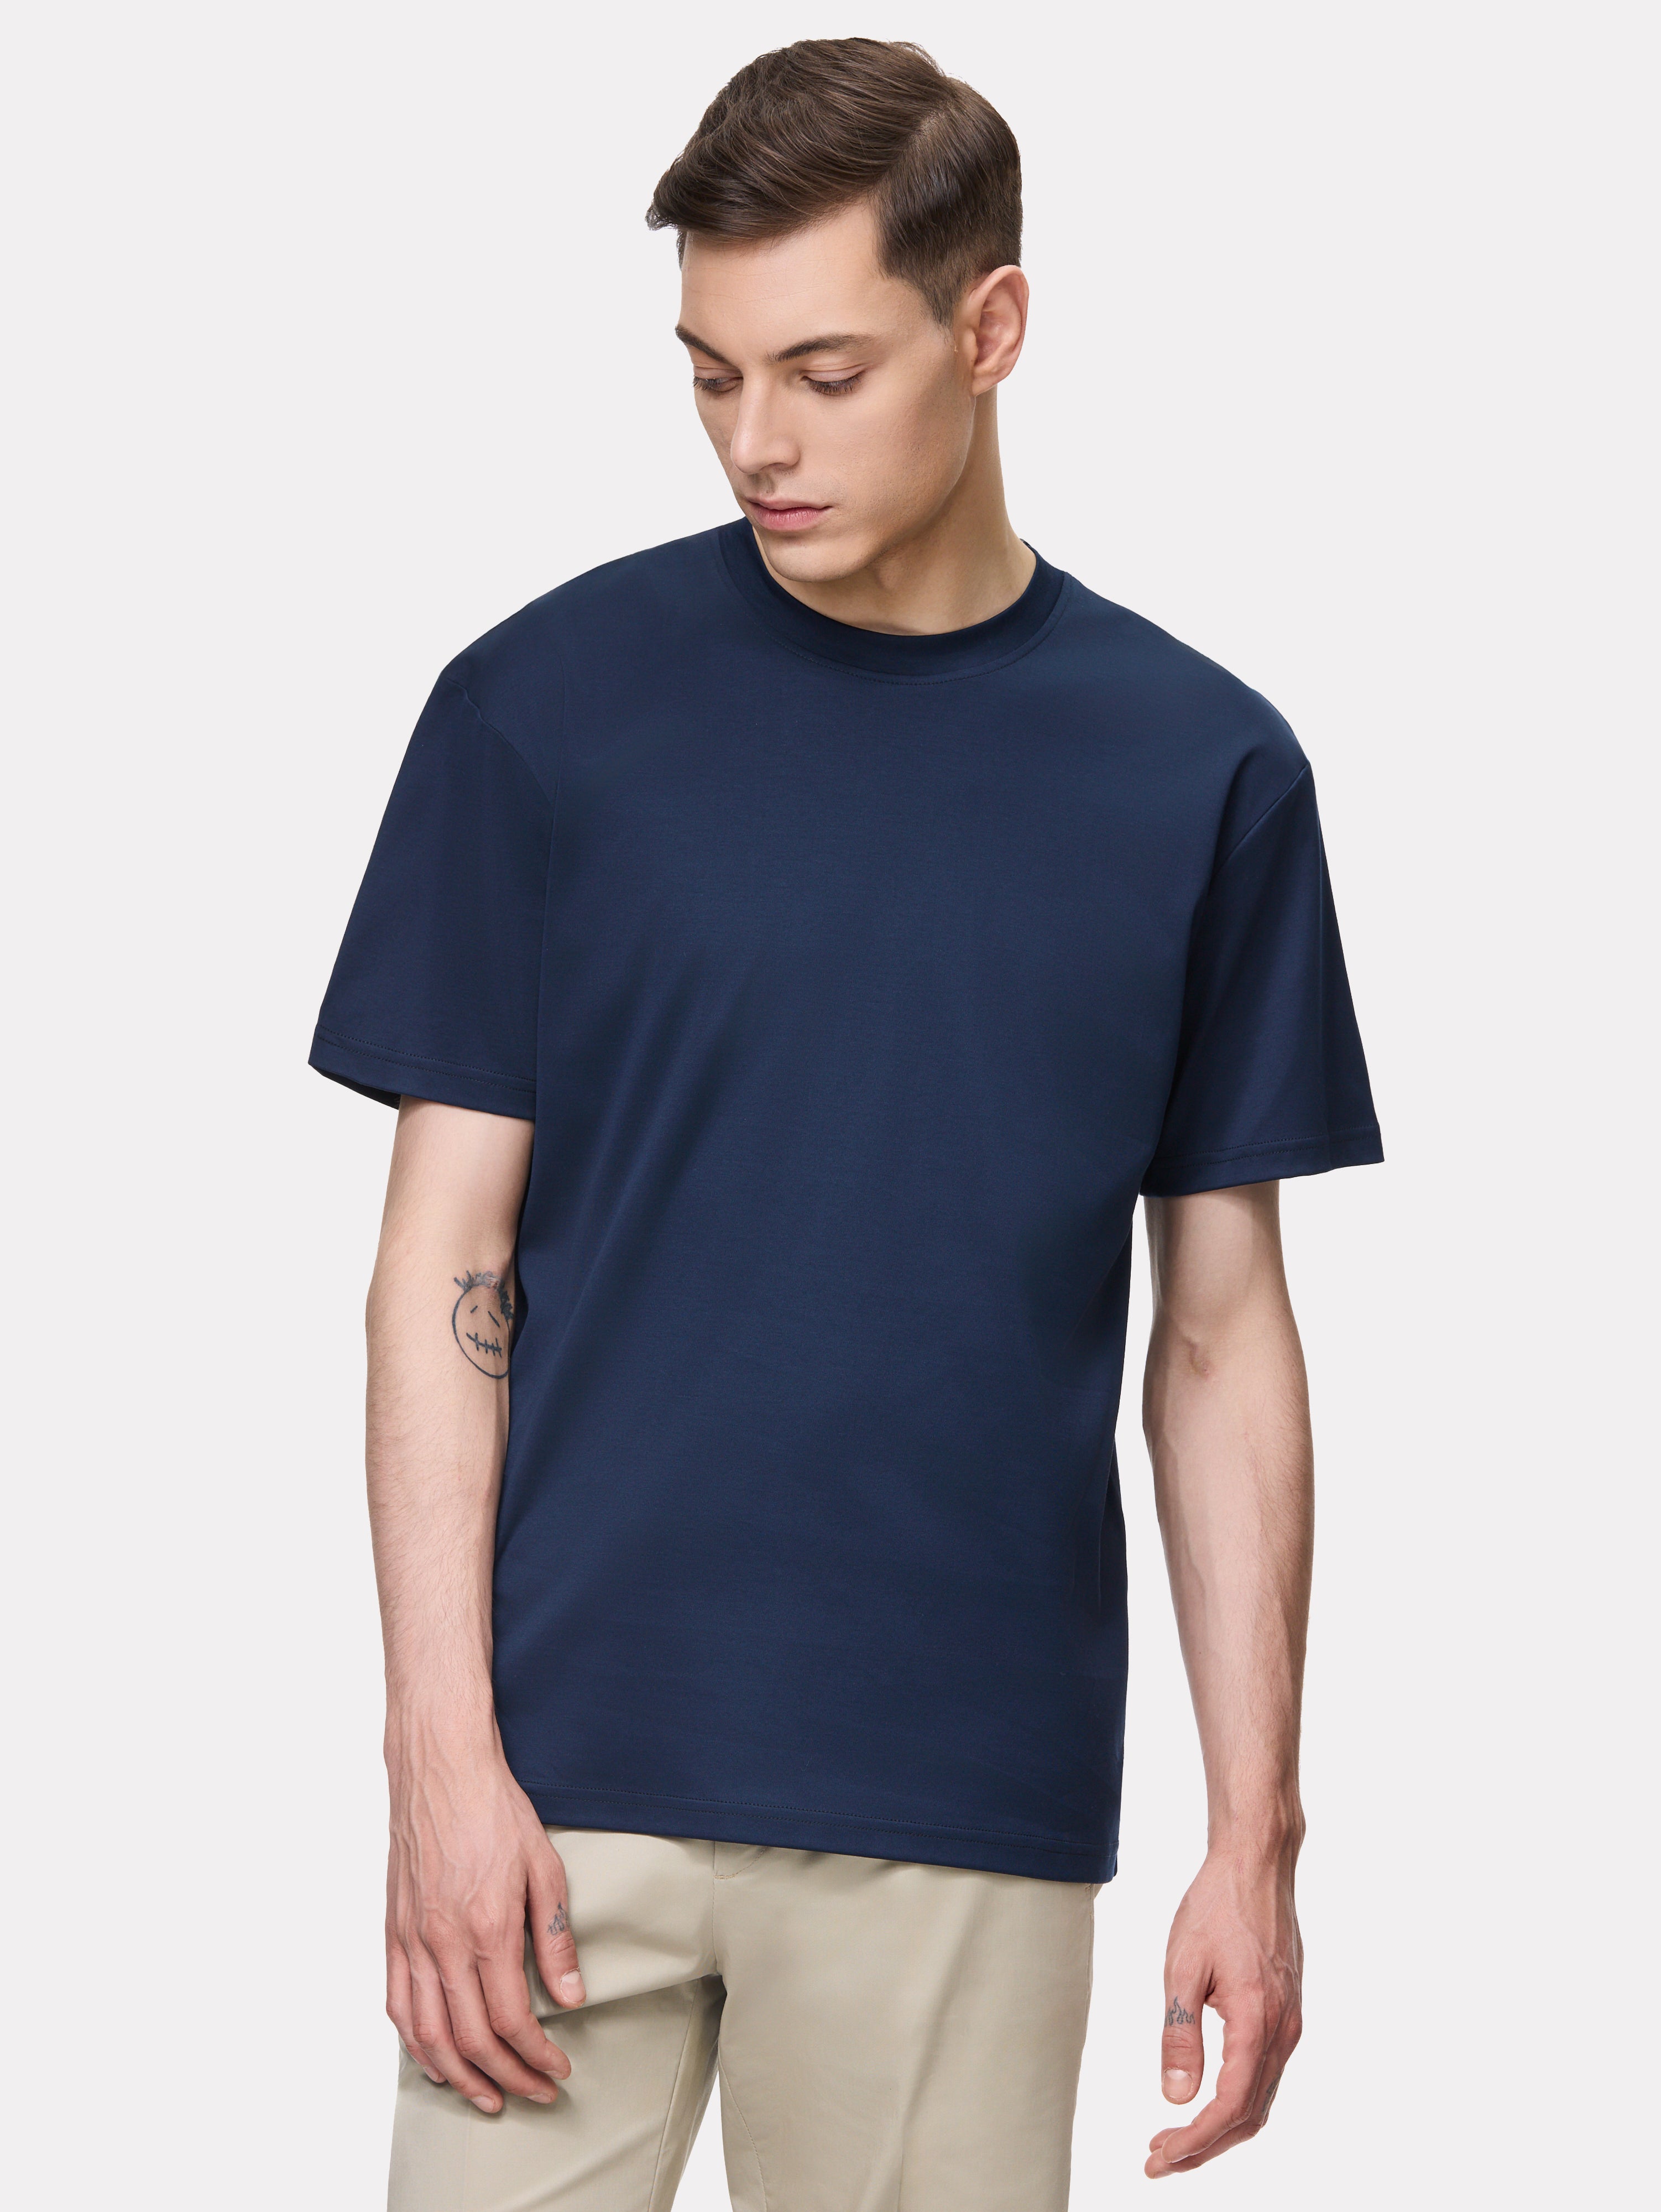 T-shirt in cotone blu navy con ottagono